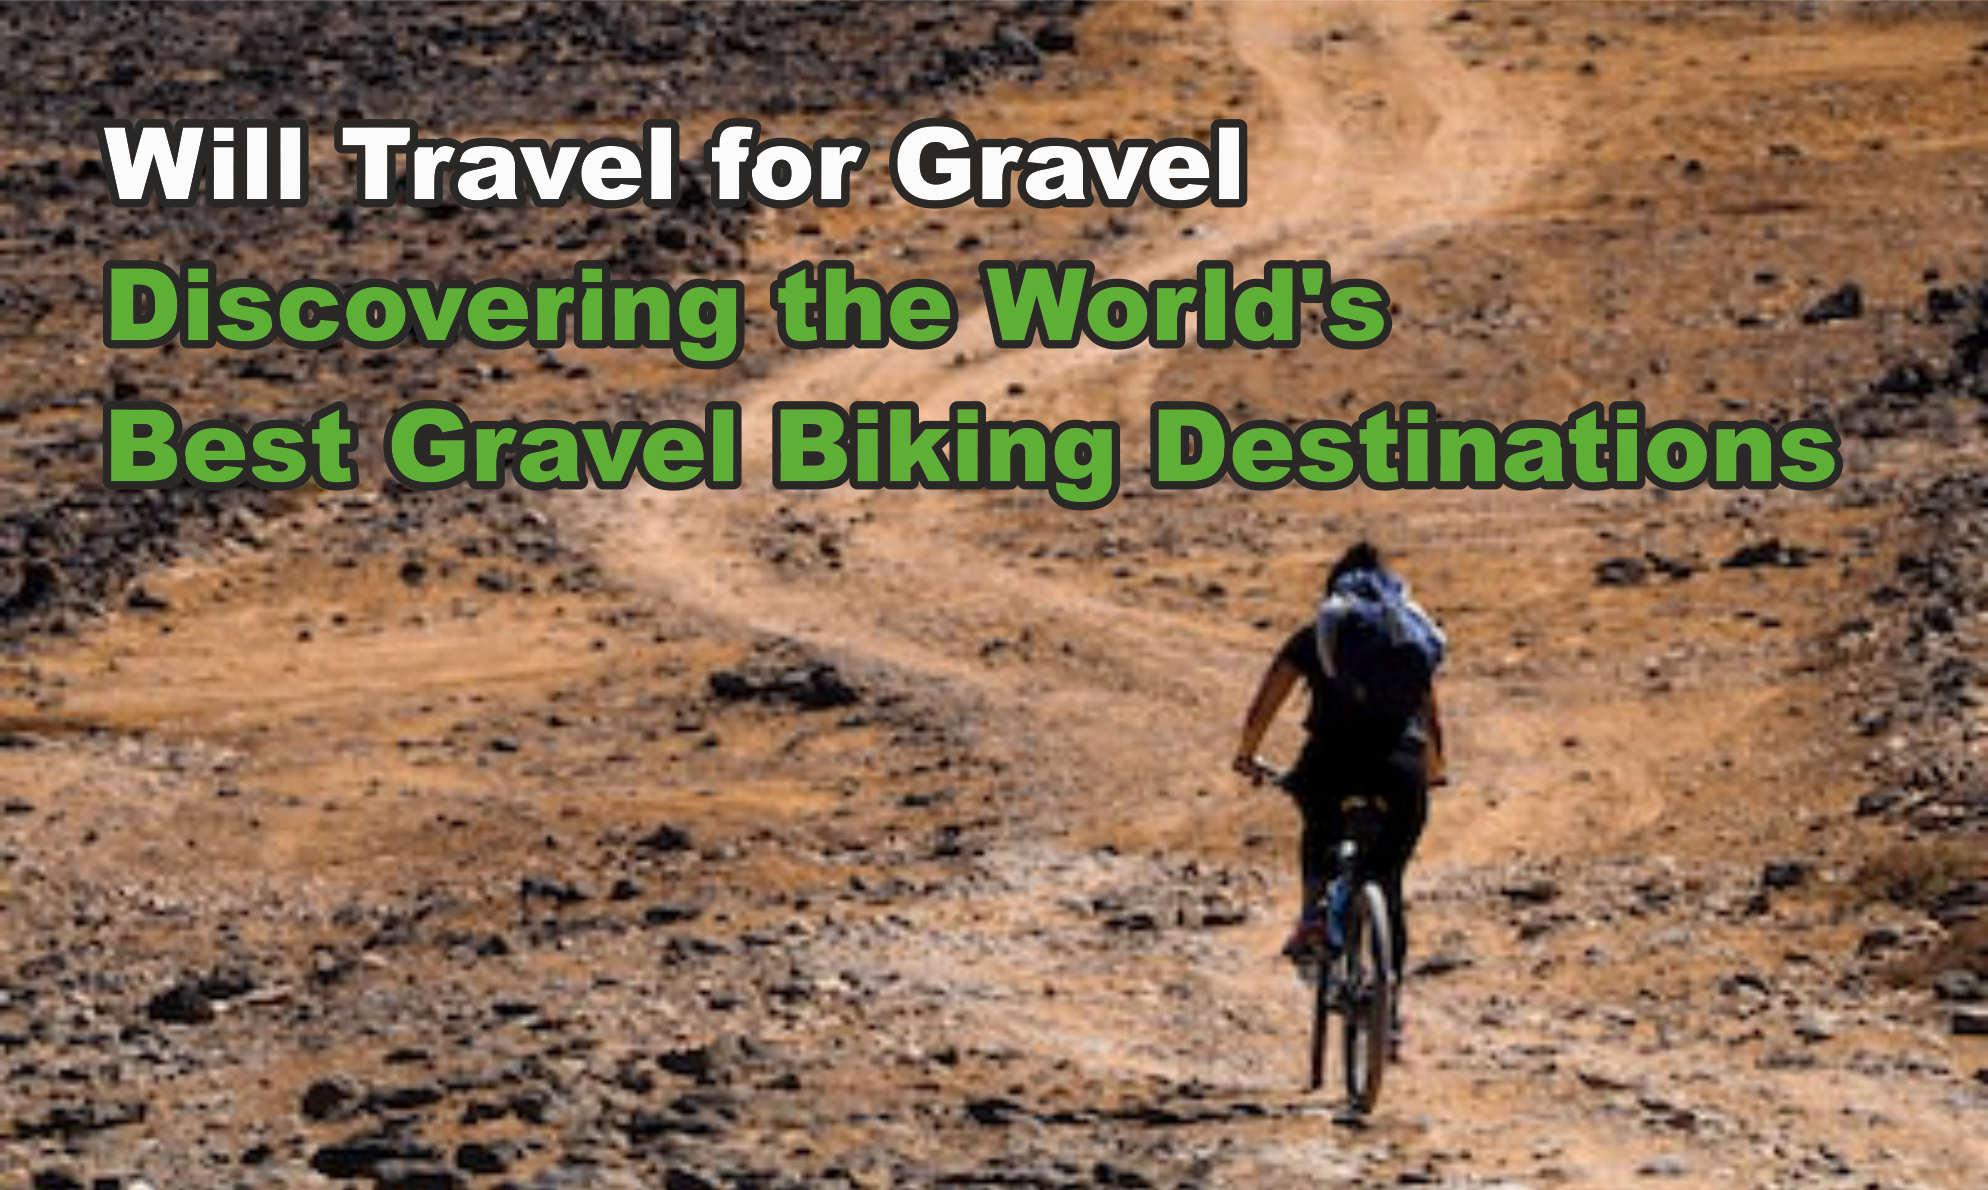 Will Travel for Gravel: Discovering the World's Best Gravel Biking Destinations